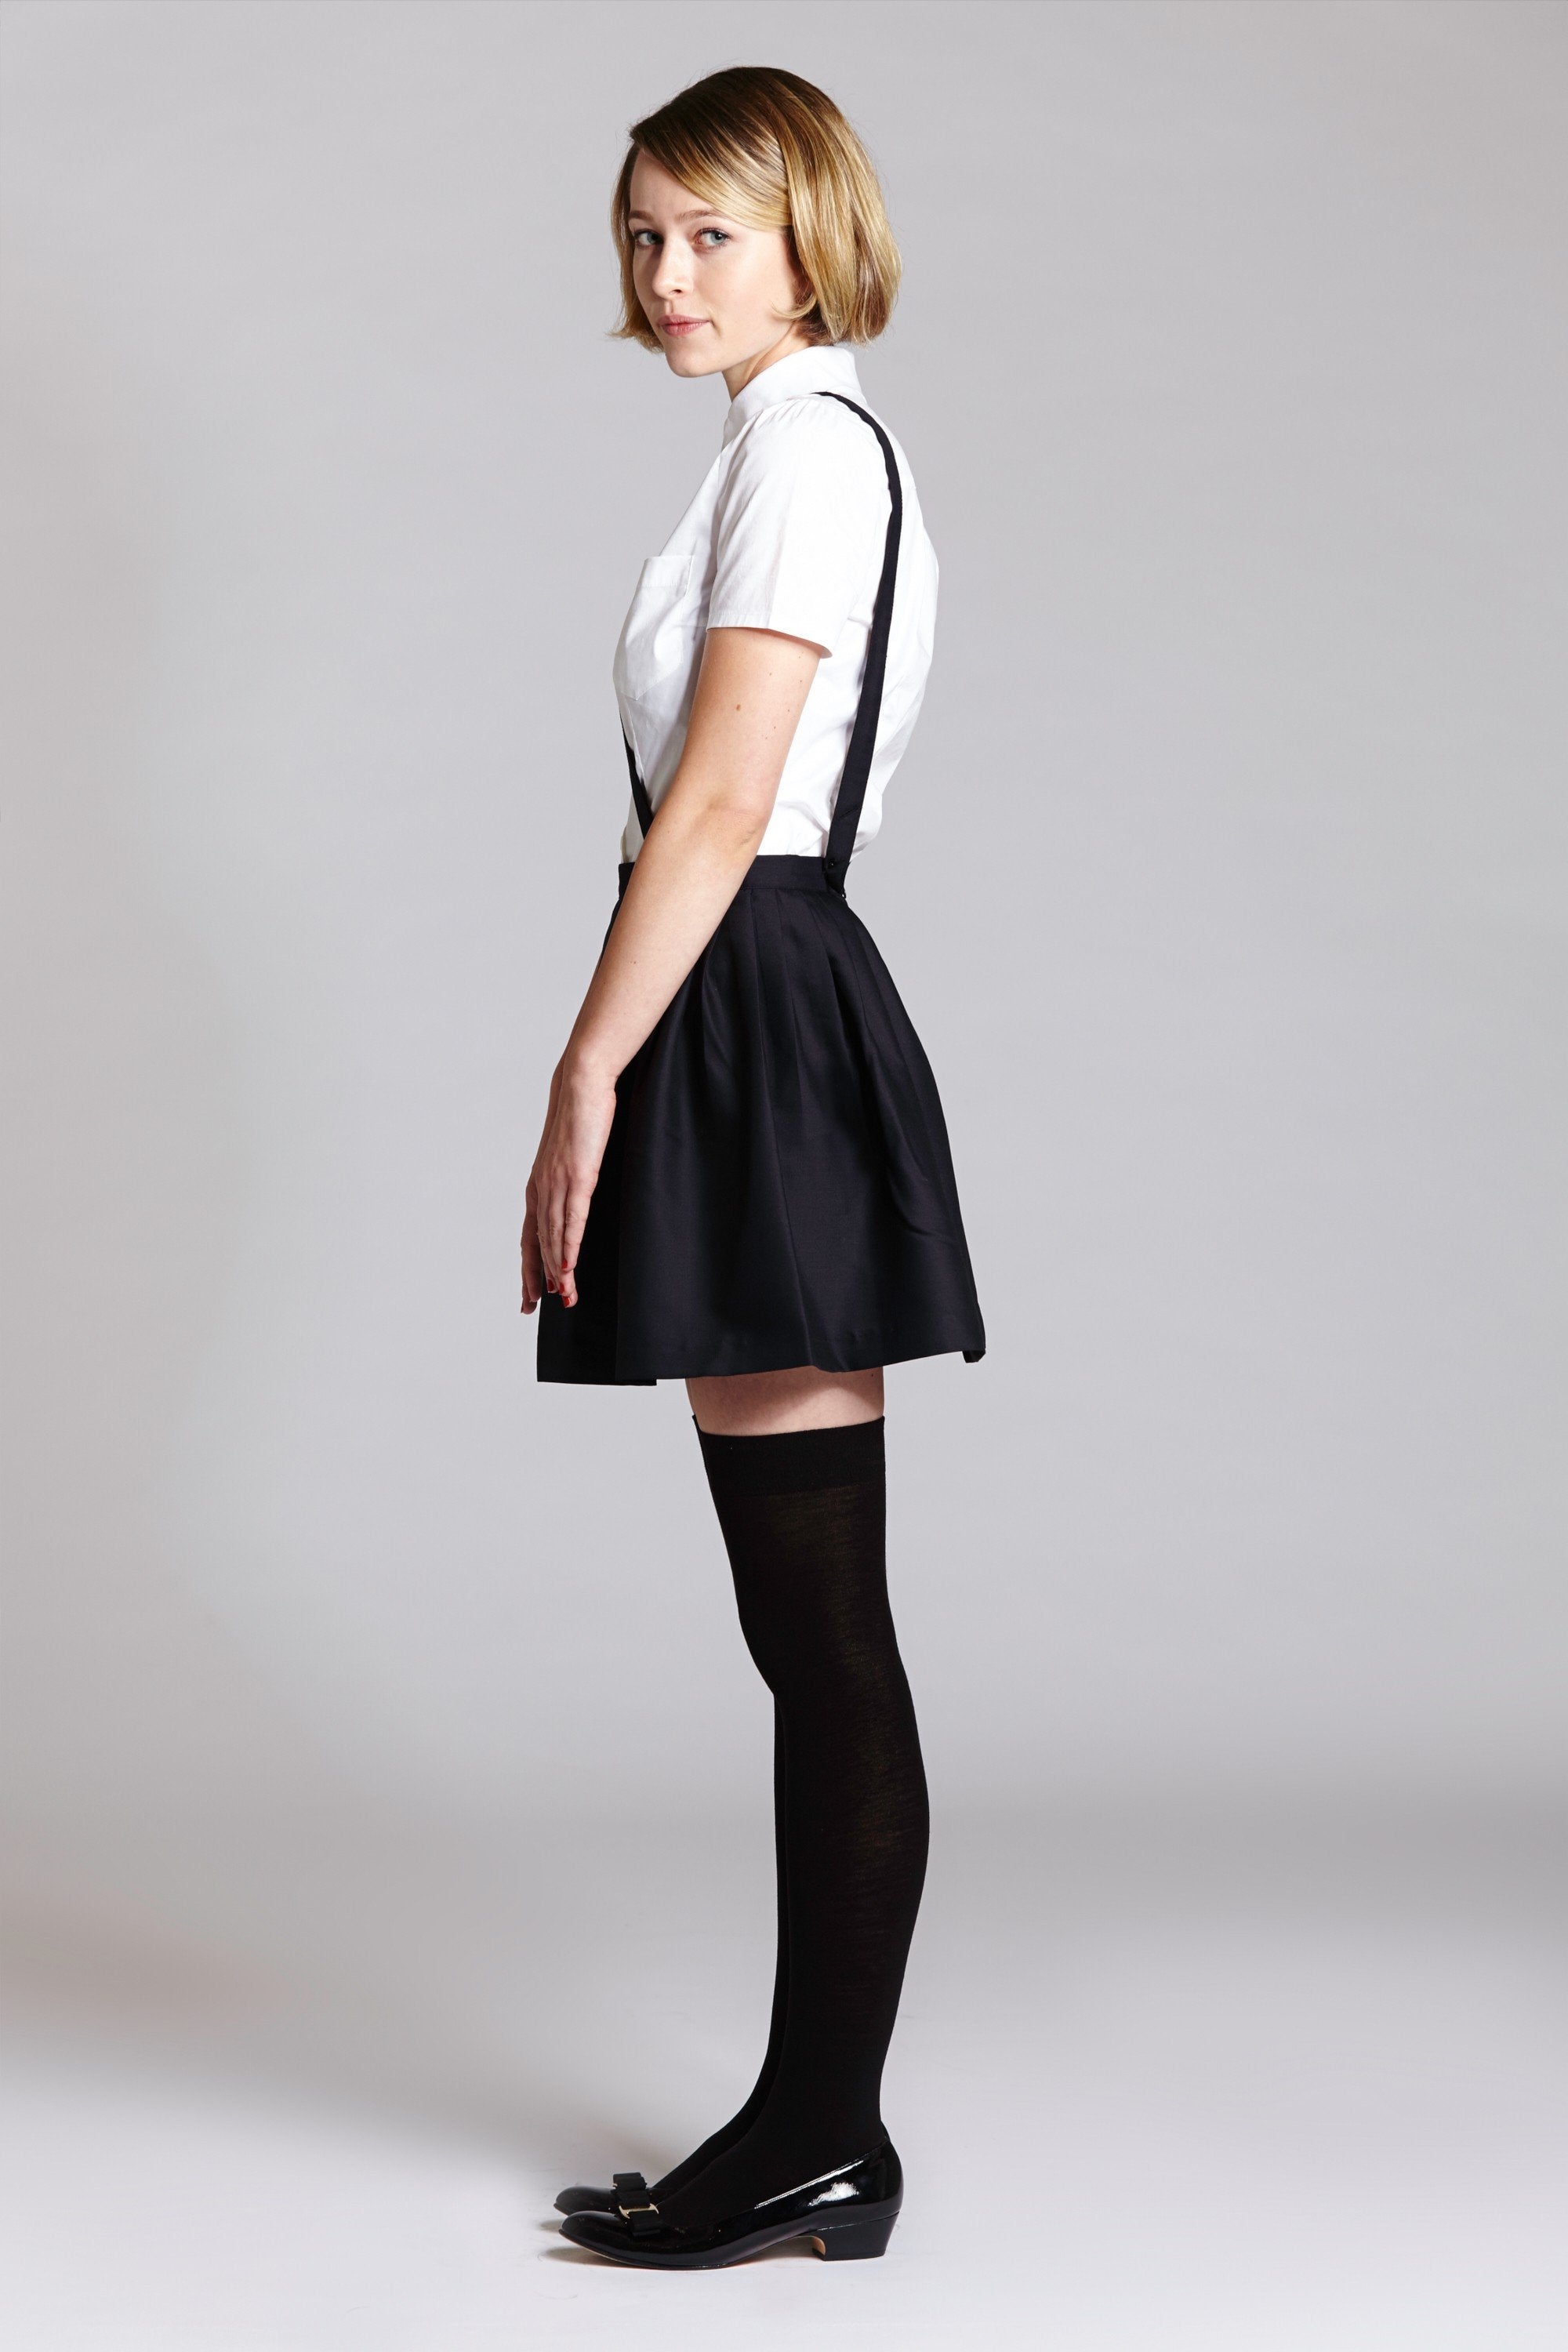 Criss Cross Suspender Skirt